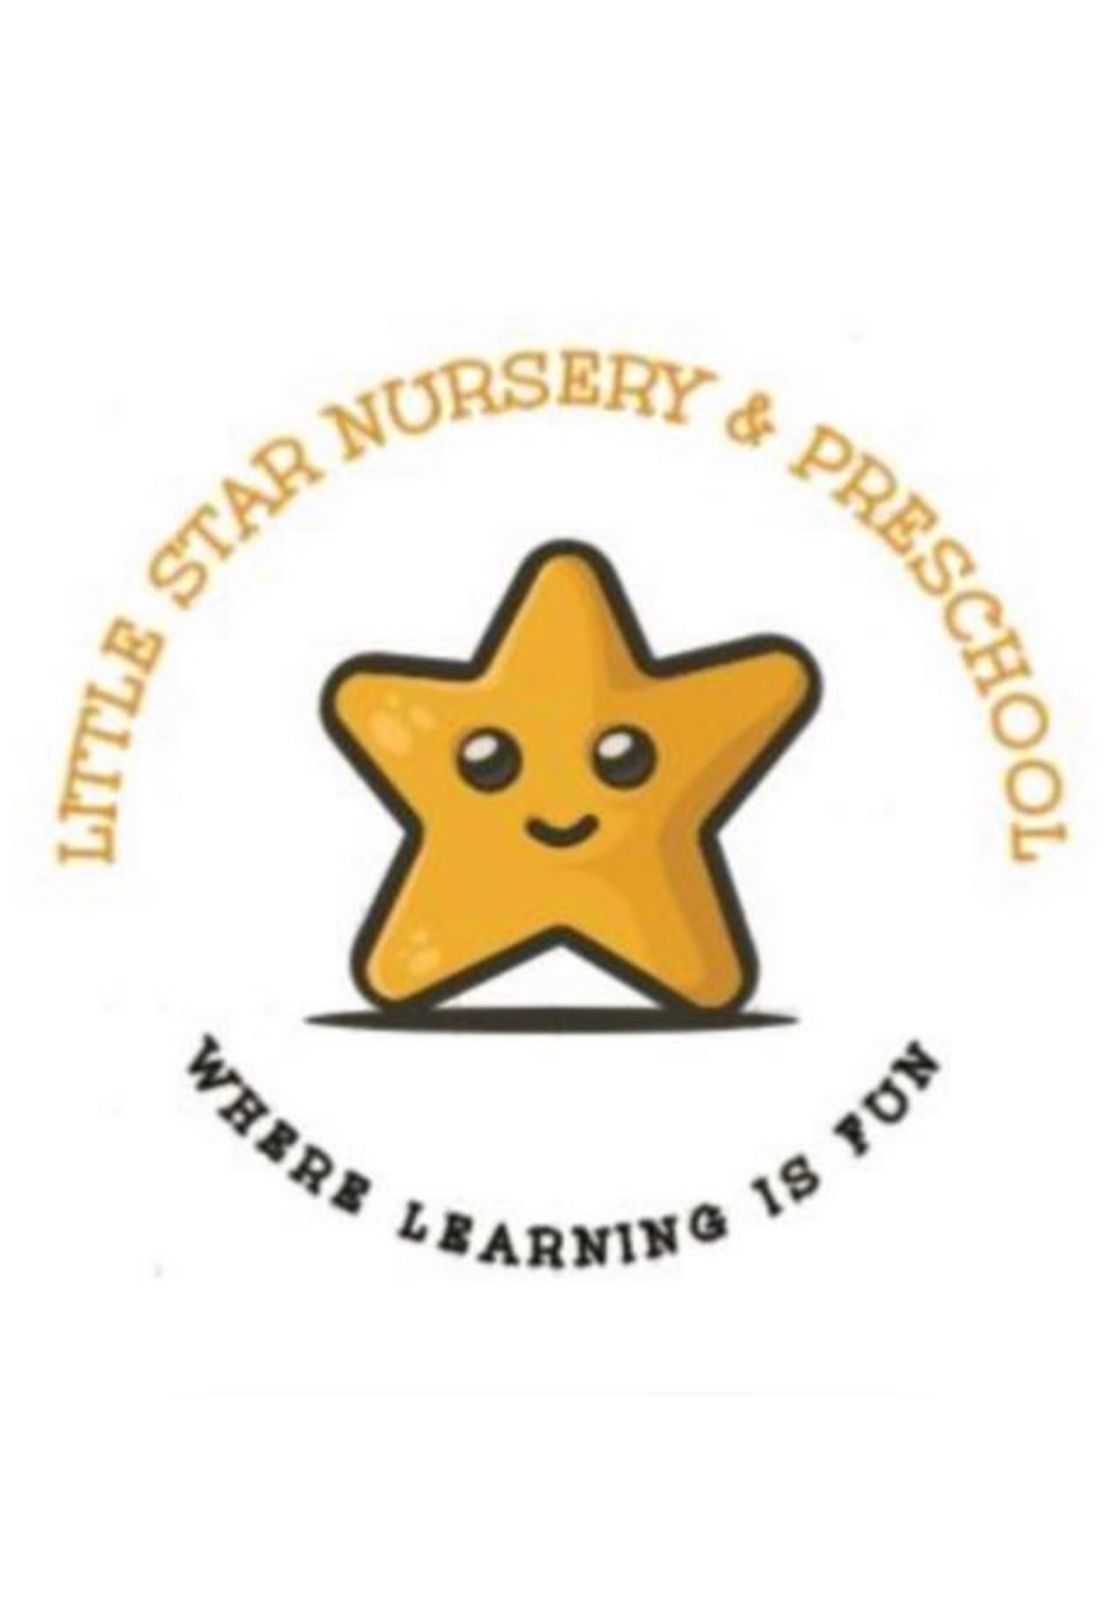 Little Star Nursery & Preschool